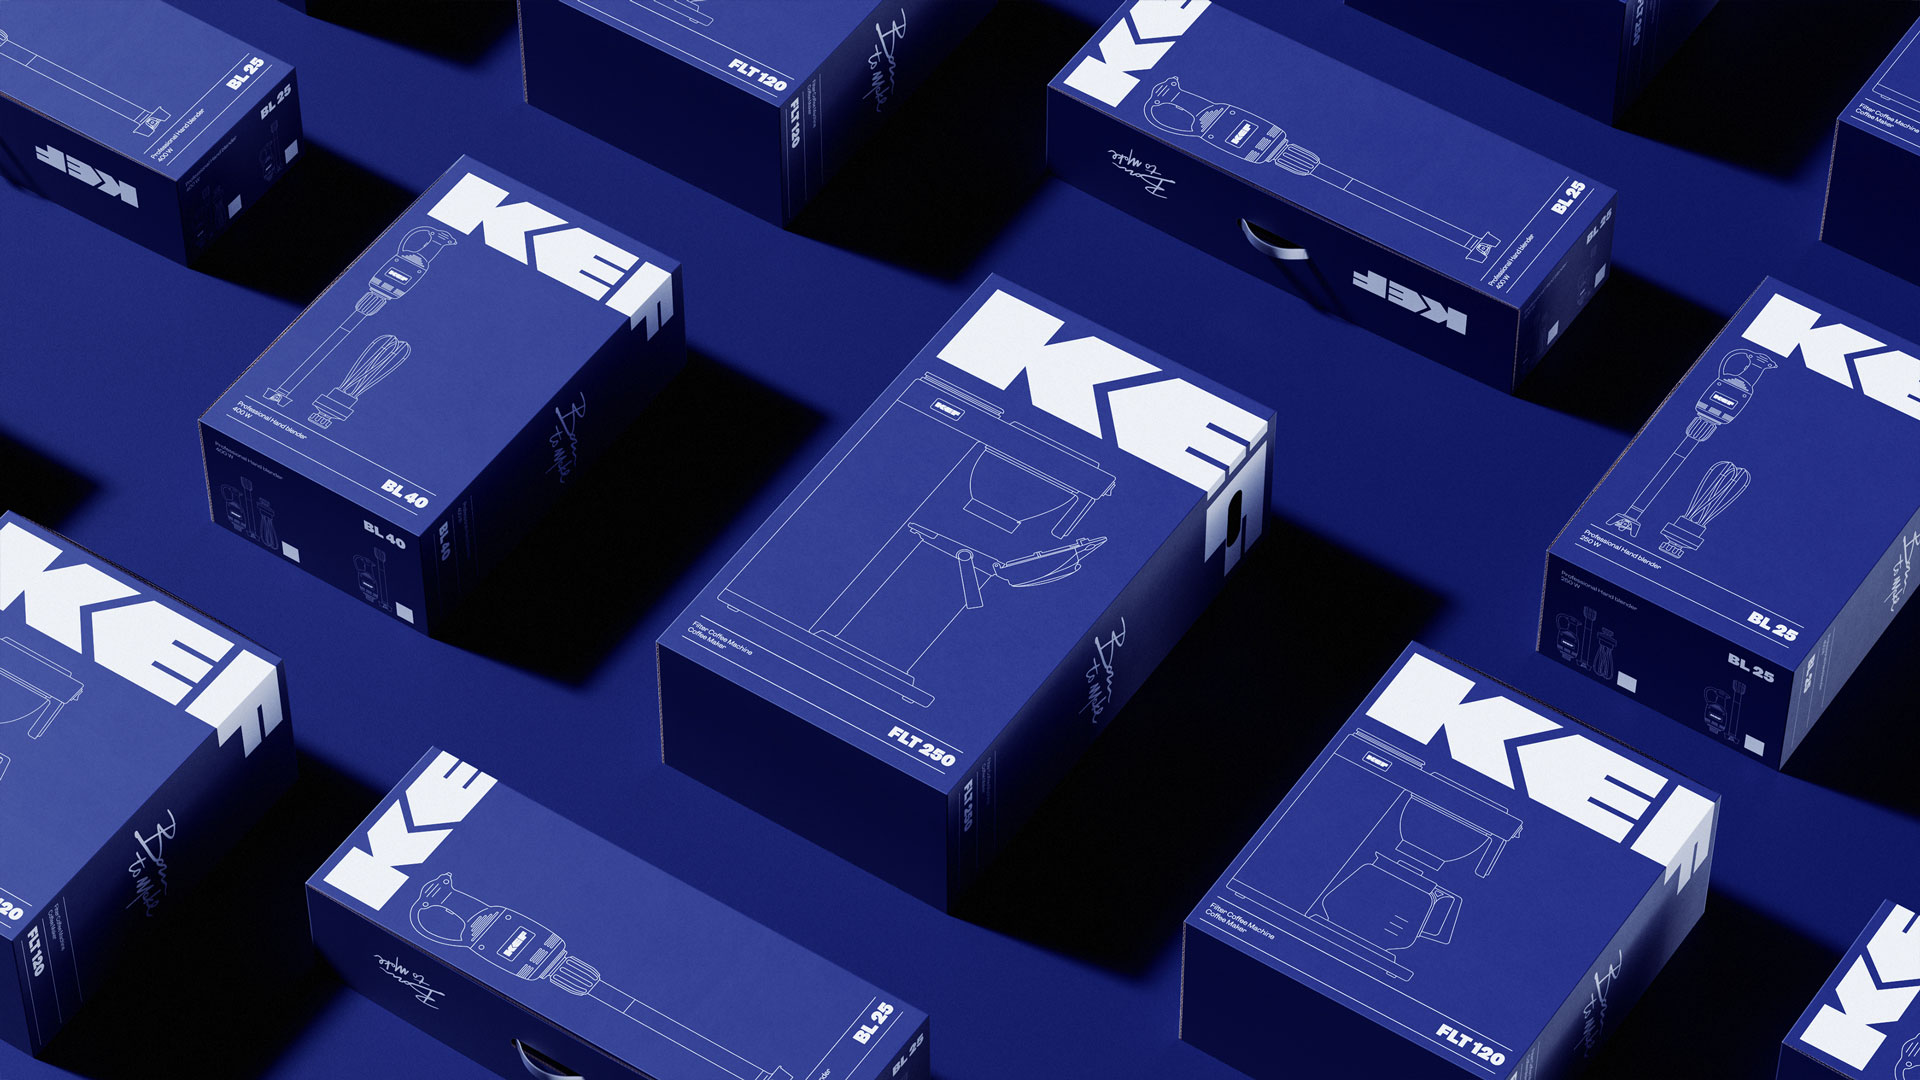 KEF Industrial Branding and Packaging Design